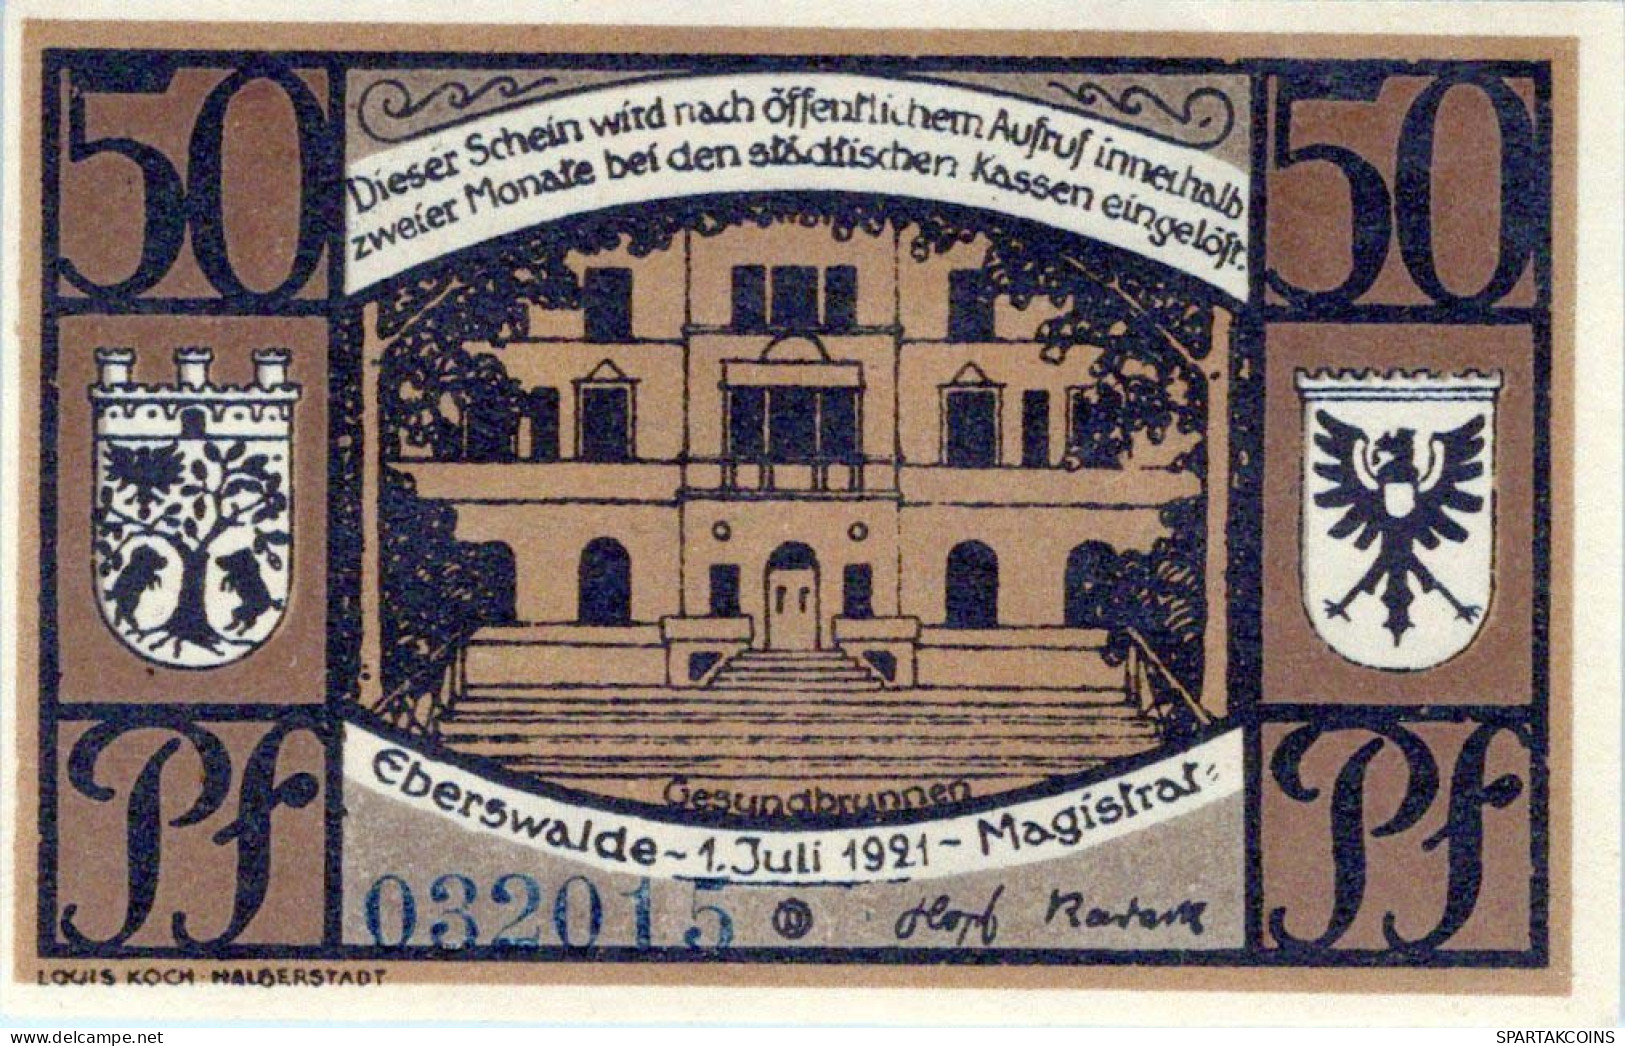 50 PFENNIG 1921 Stadt EBERSWALDE Brandenburg UNC DEUTSCHLAND Notgeld #PB018.V - [11] Local Banknote Issues